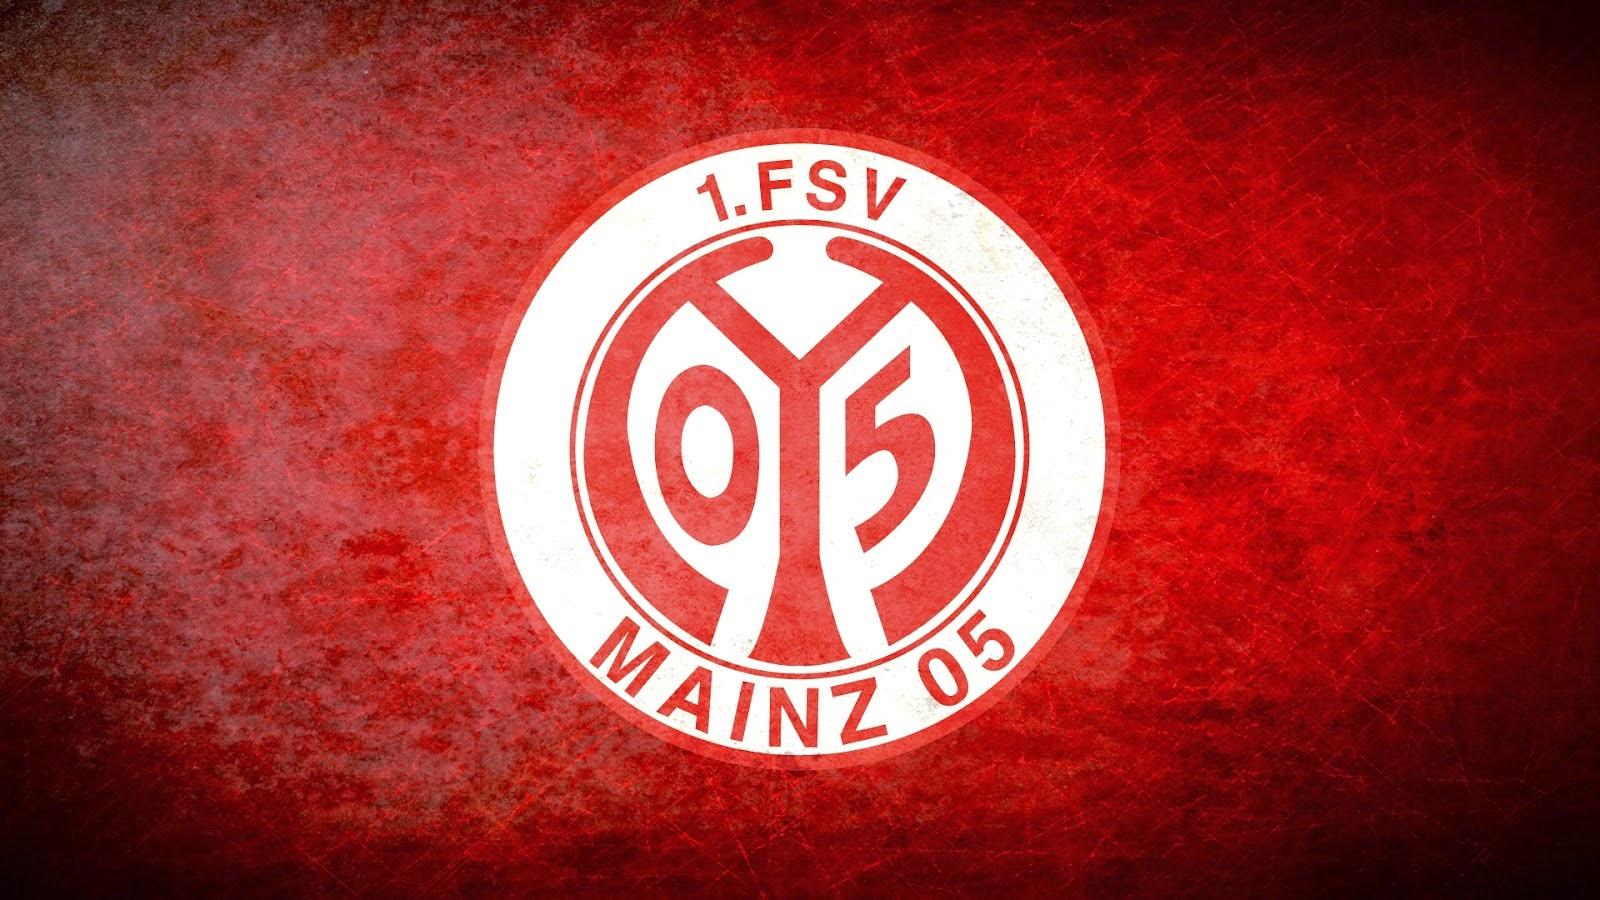 1. Fsv Mainz 05 Wallpapers